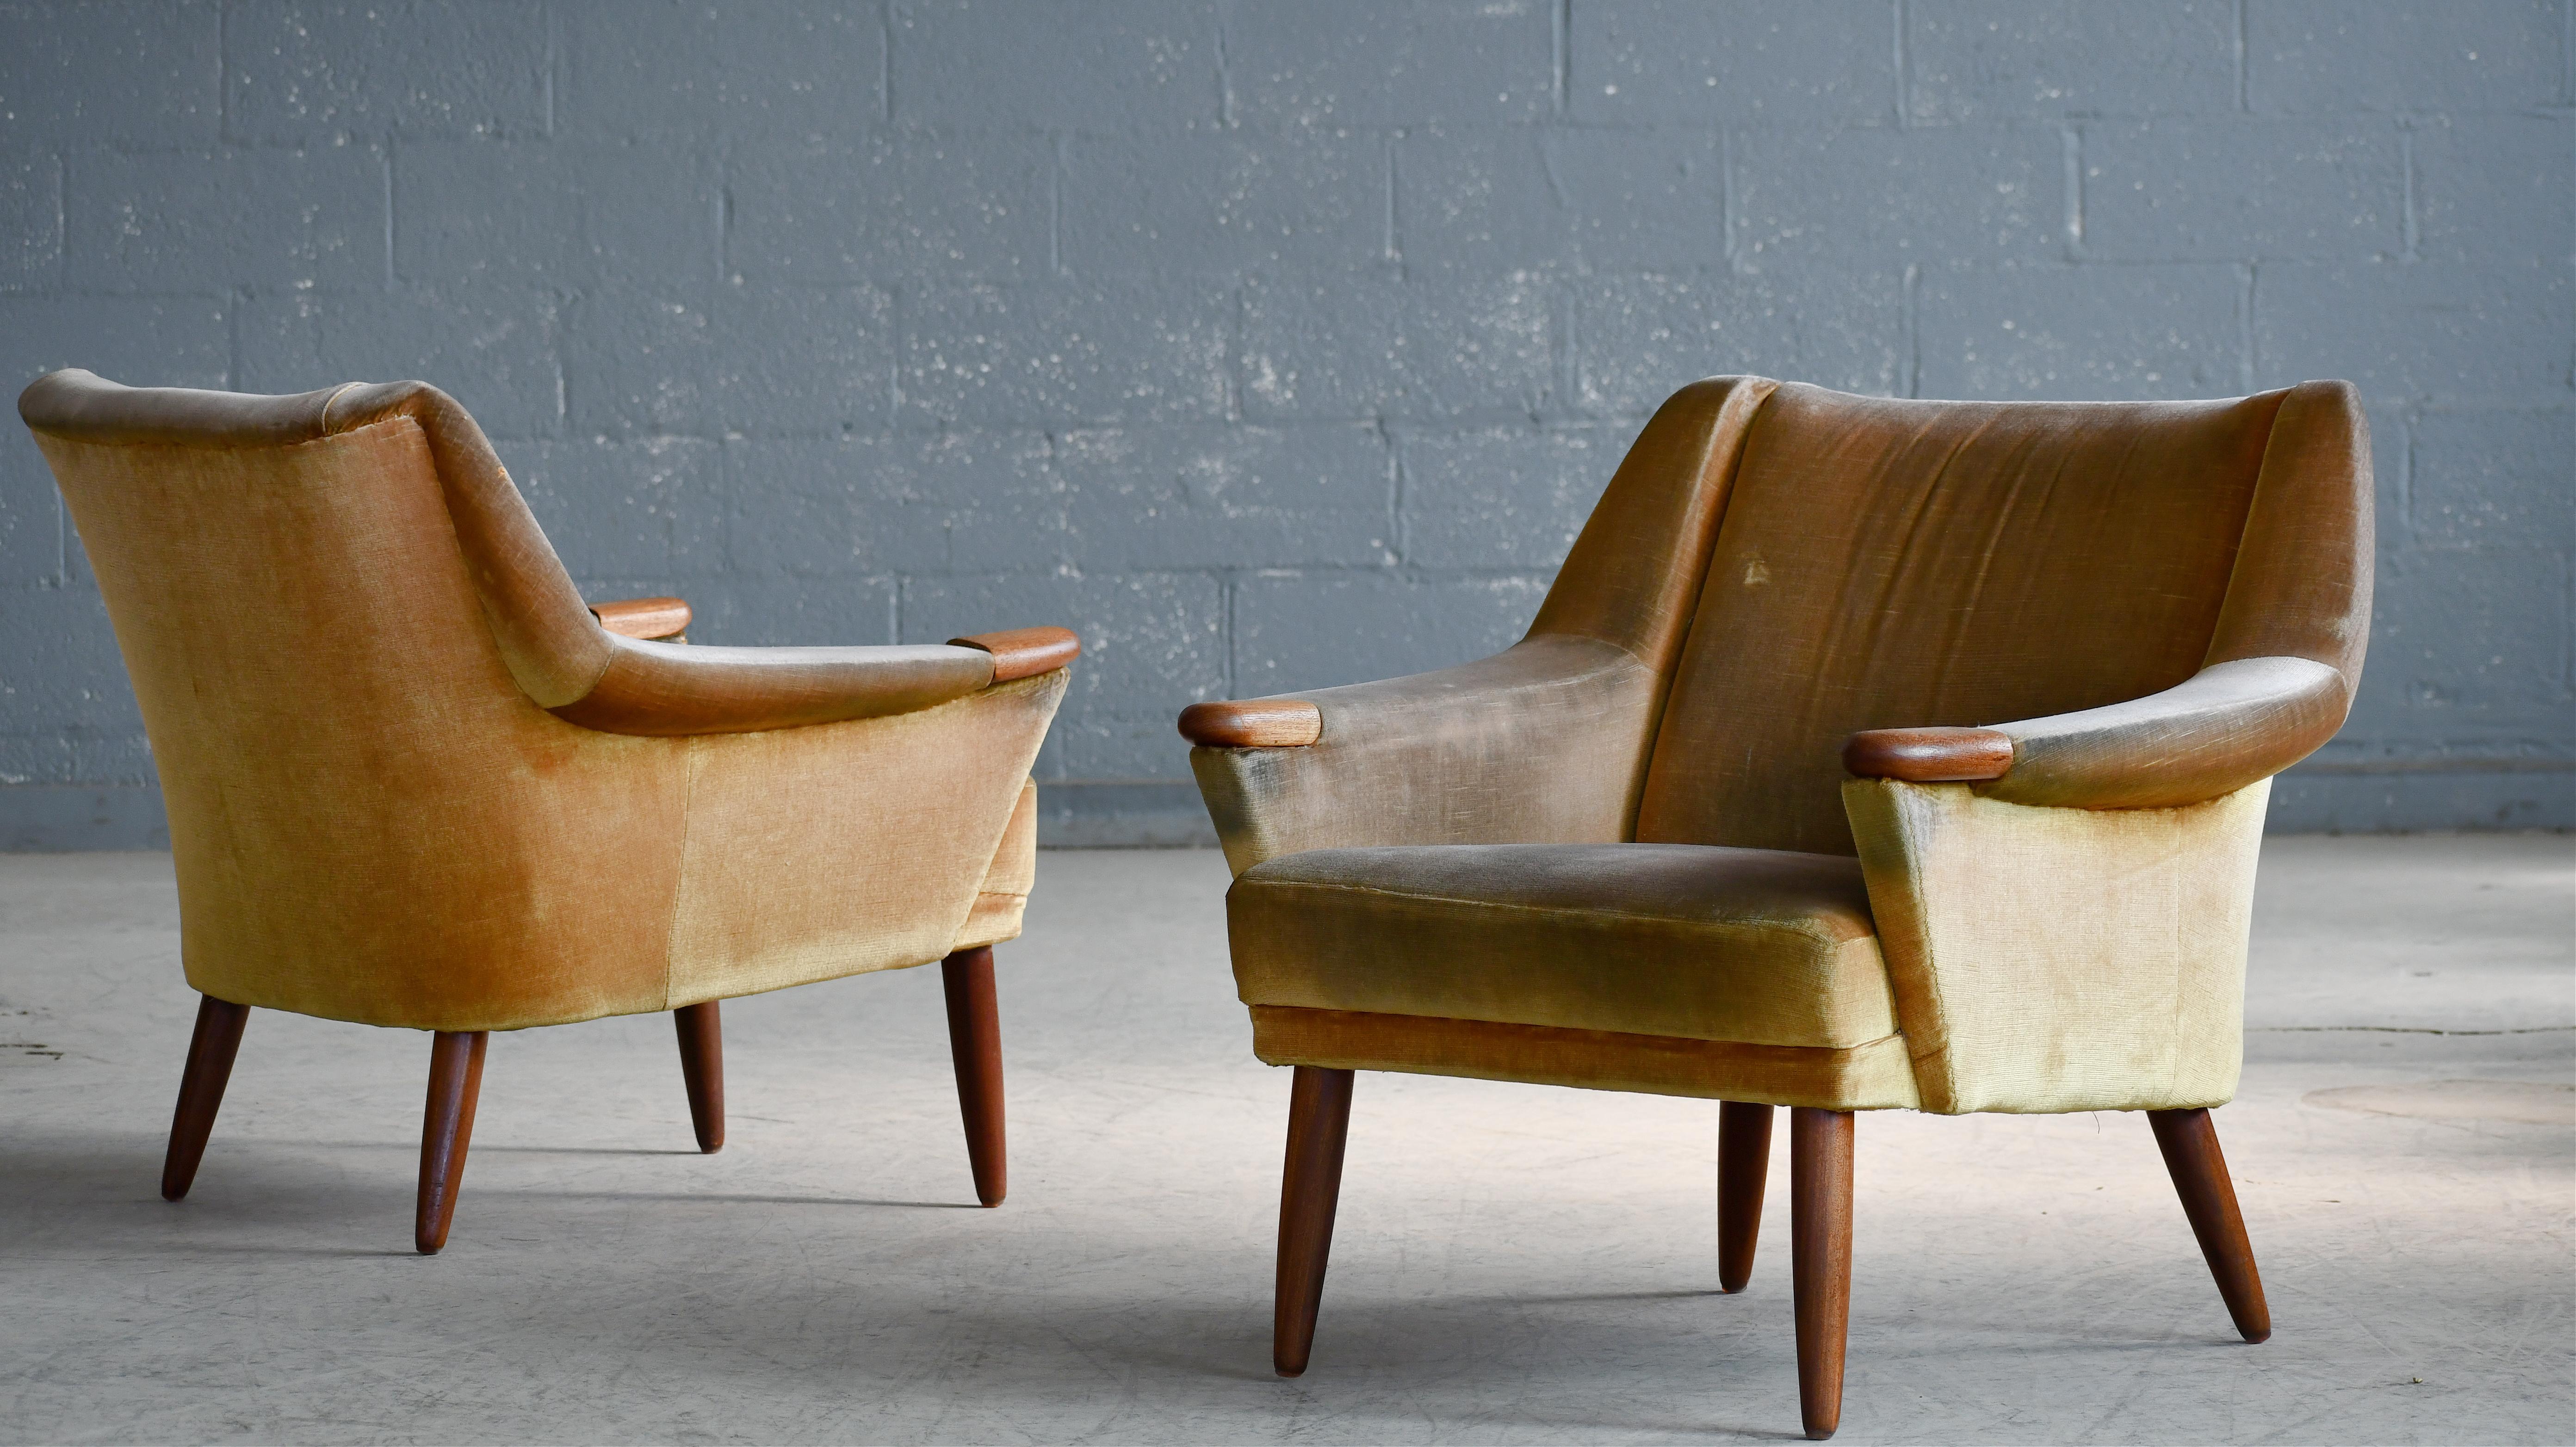 Ultracooles Paar niedriger Loungesessel aus den frühen 1960er Jahren mit dem für dänische Möbel aus dieser Zeit typischen Schwulst. Hergestellt in Dänemark, aber wir sind nicht sicher, der Hersteller noch Designer. Auf Teakholzbeinen stehend und mit